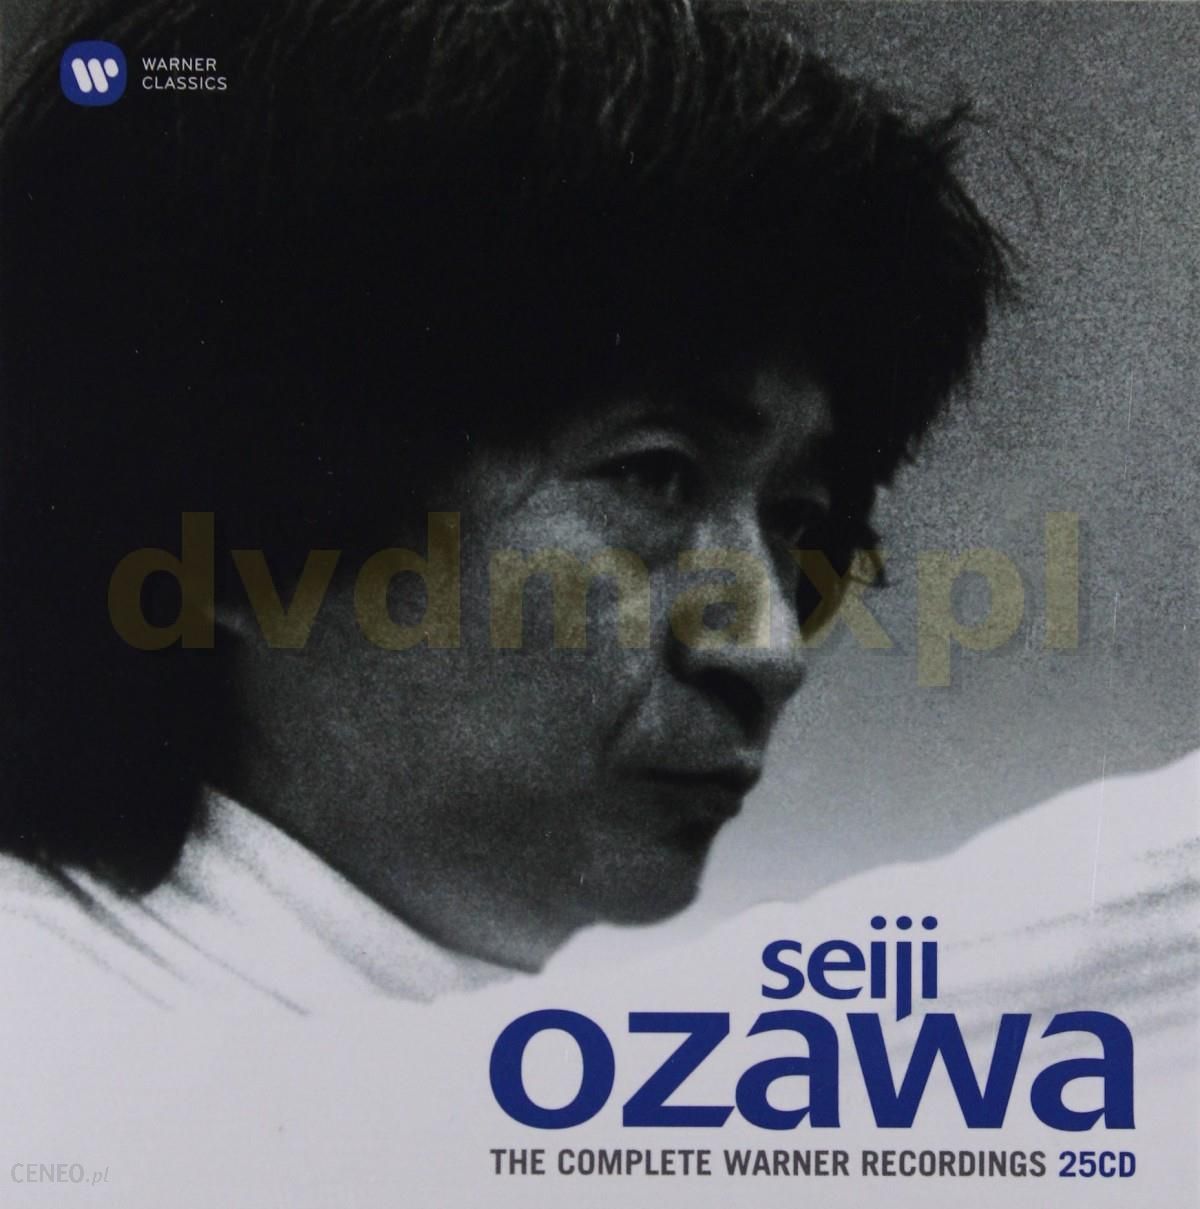 Płyta kompaktowa Seiji Ozawa: Seiji Ozawa - The Complete Warner Recordings  (25CD) - Ceny i opinie - Ceneo.pl